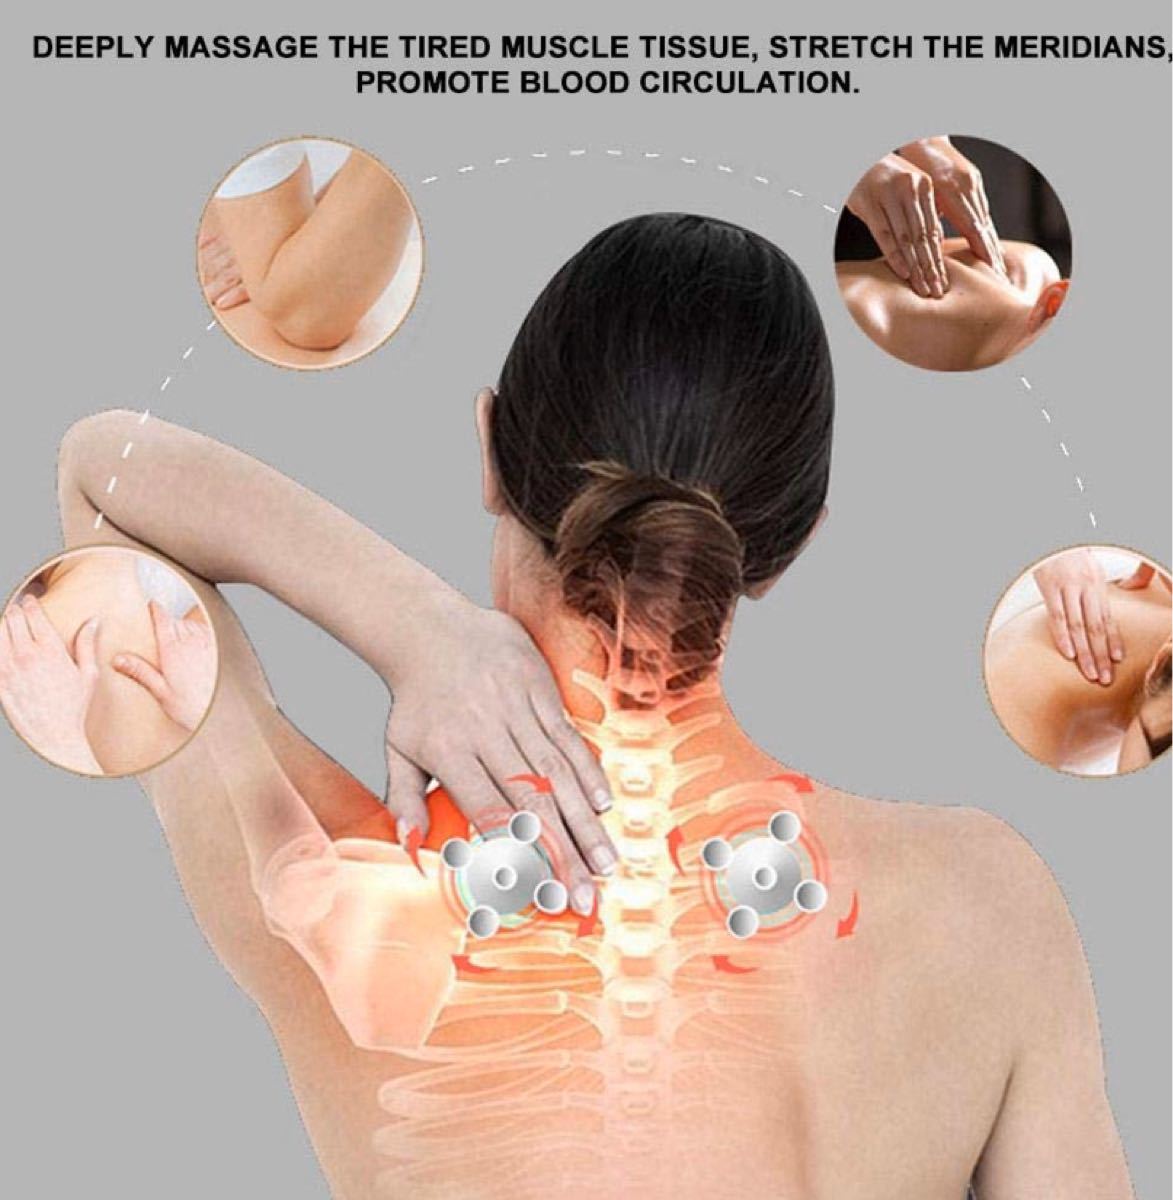 マッサージ枕肩ふくらはぎ用の多機能指圧背中と首のマッサージャー、痛みと疲労の緩和